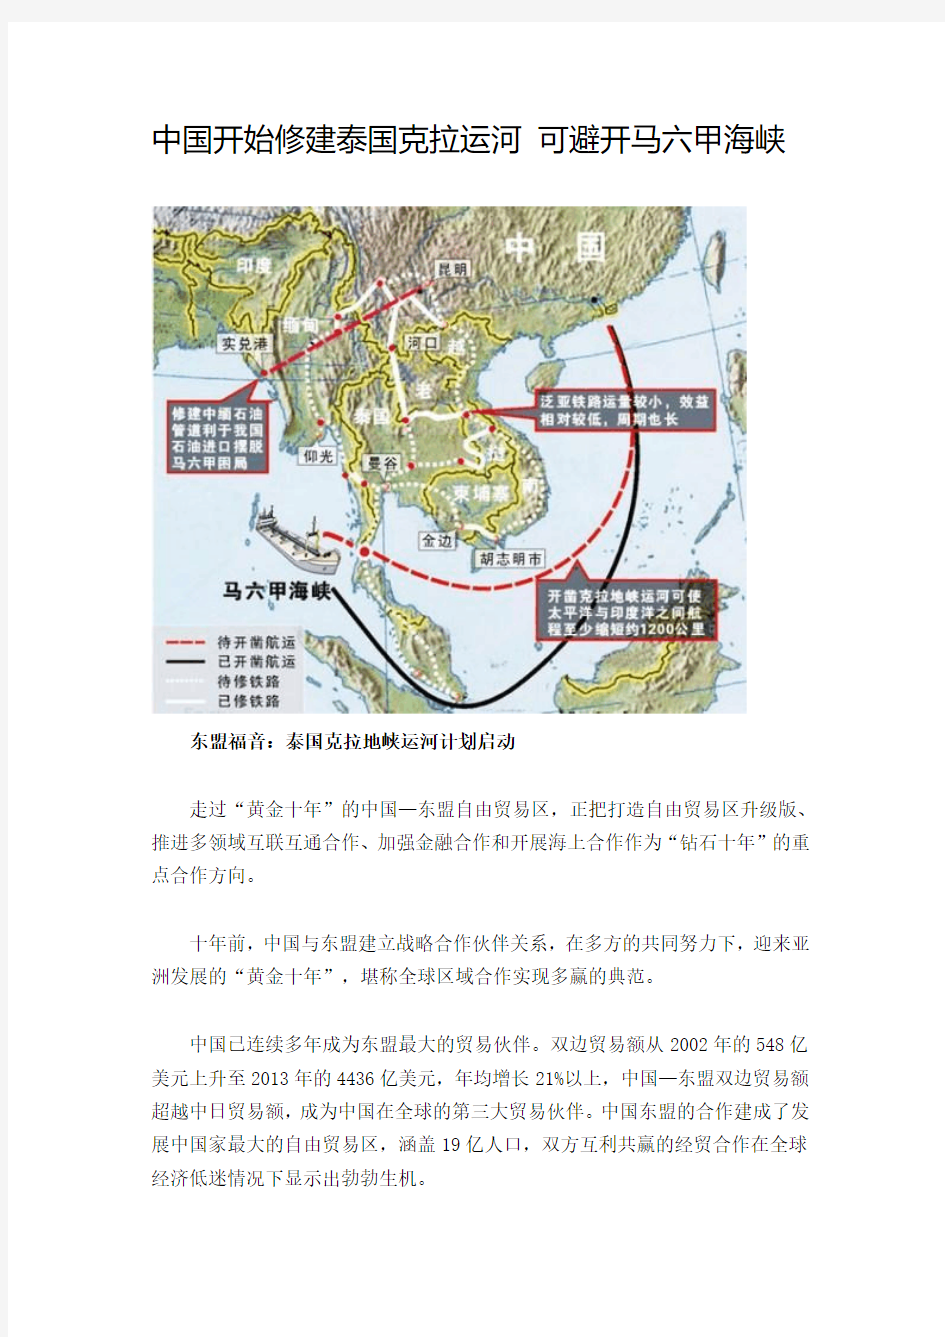 中国开始修建泰国克拉运河 可避开马六甲海峡